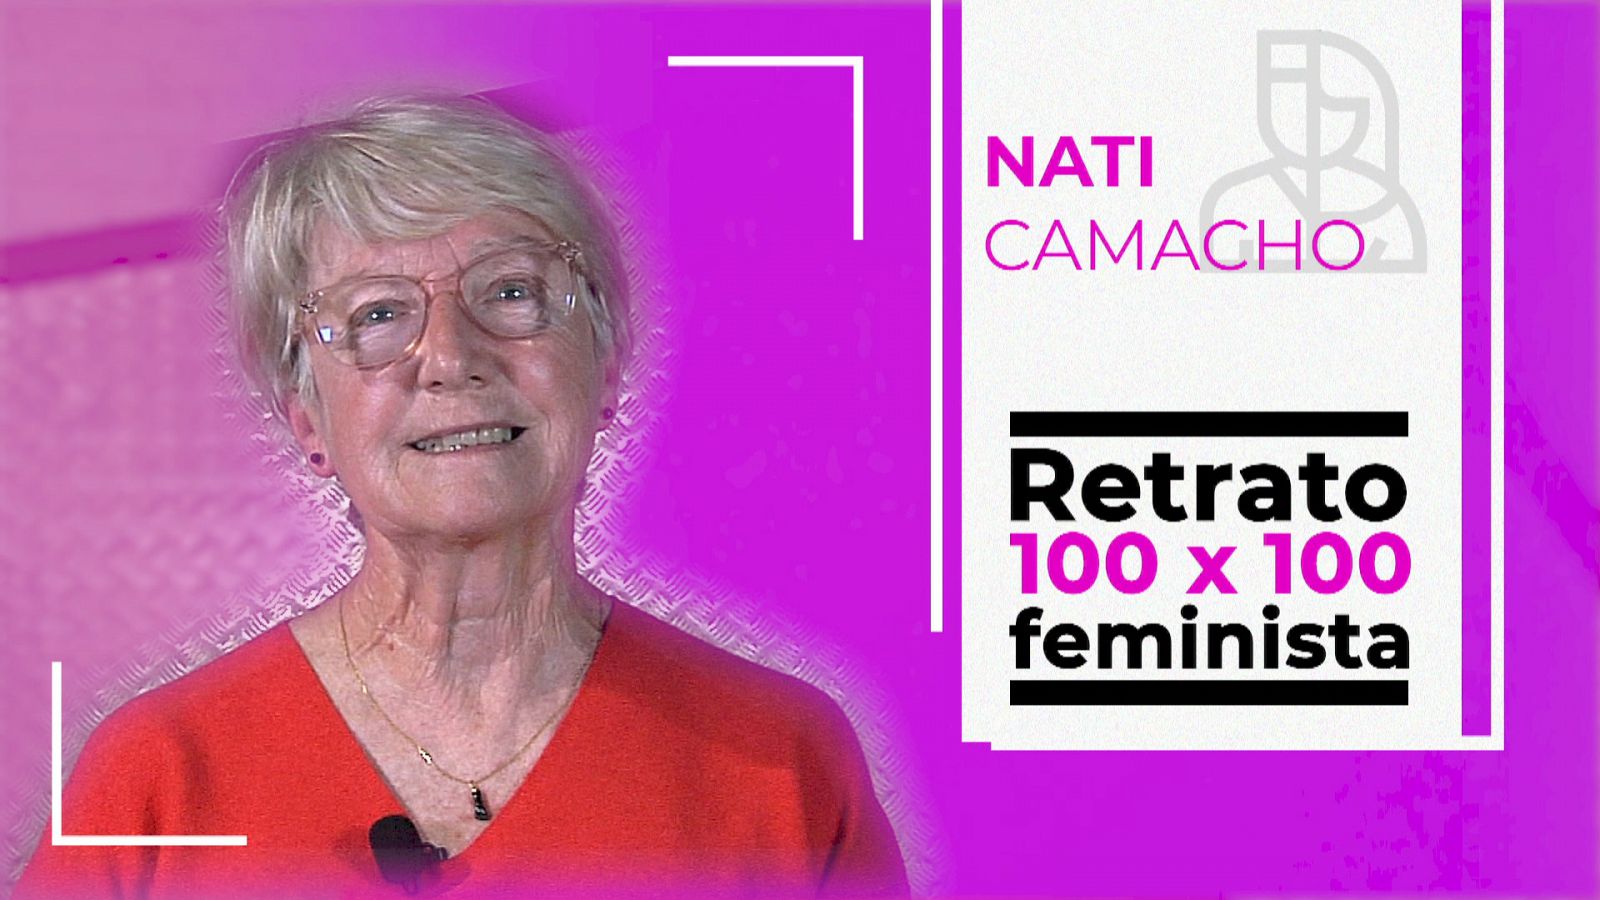 Retrato 100x100 feminista: Nati Camacho